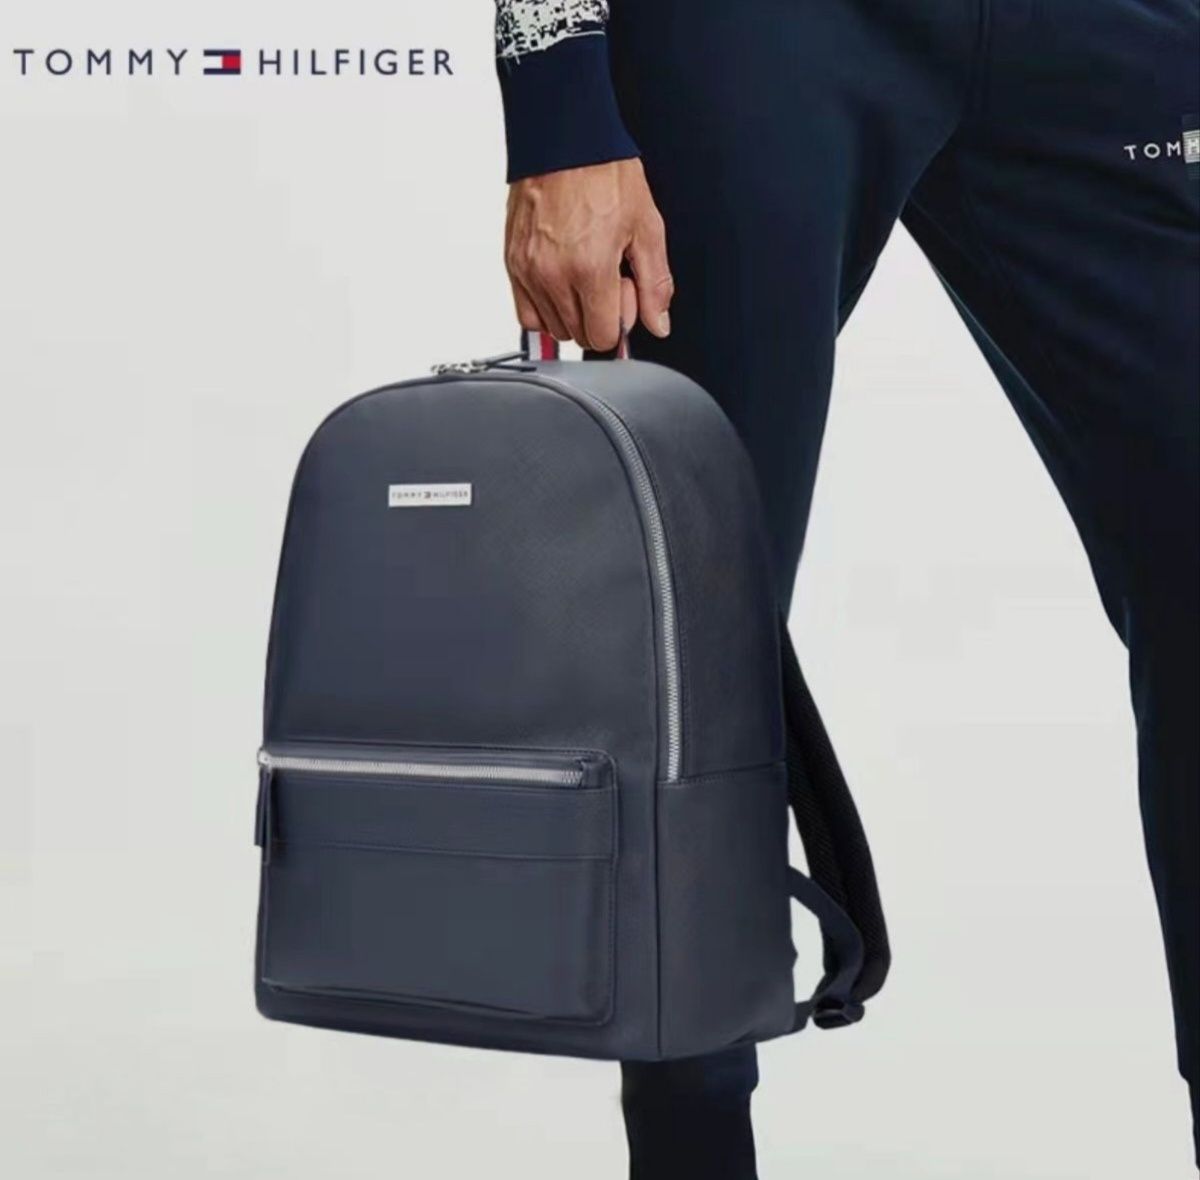 Рюкзак Tommy Hilfiger новый качественный